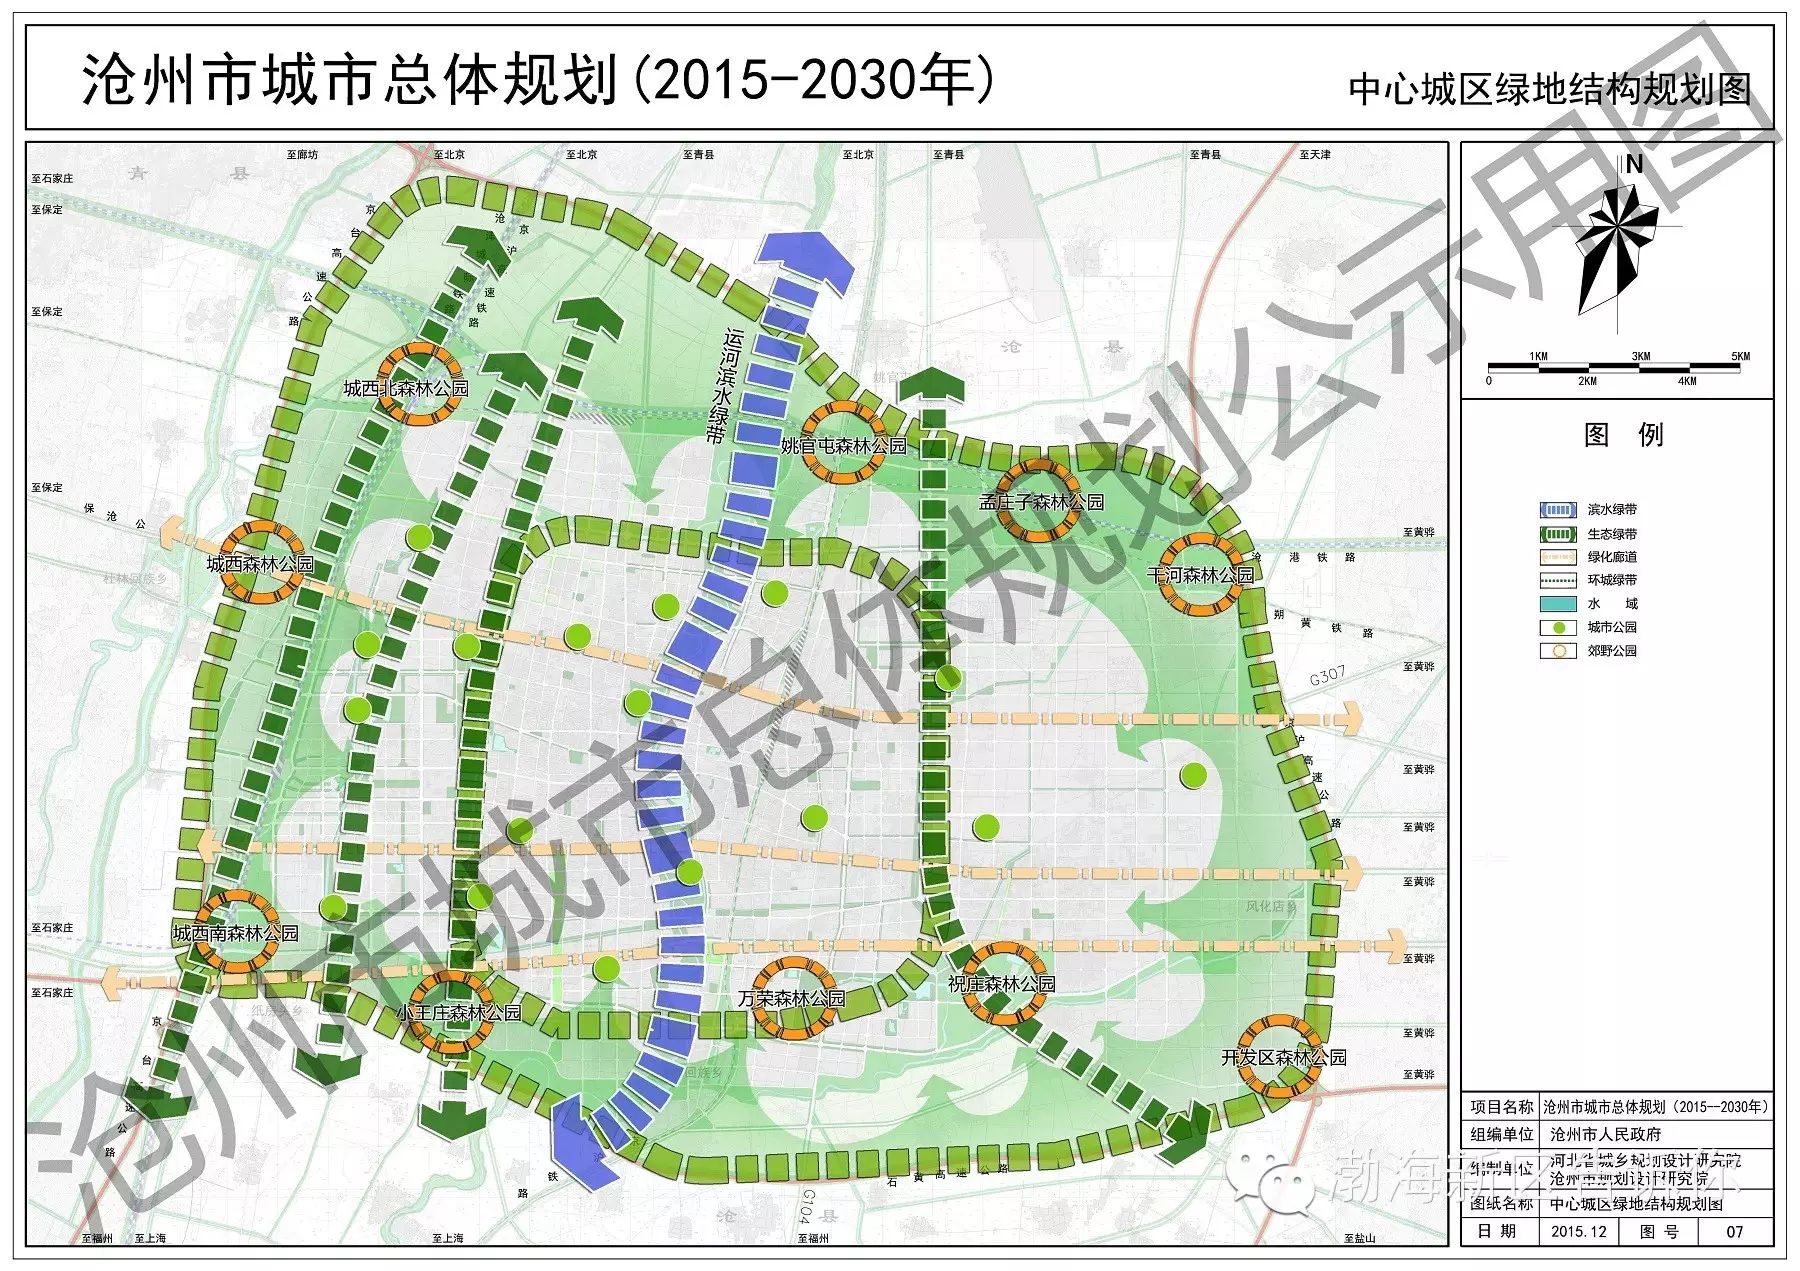 [新闻]沧州市城市总体规划(2015-2030年)(草案)公布